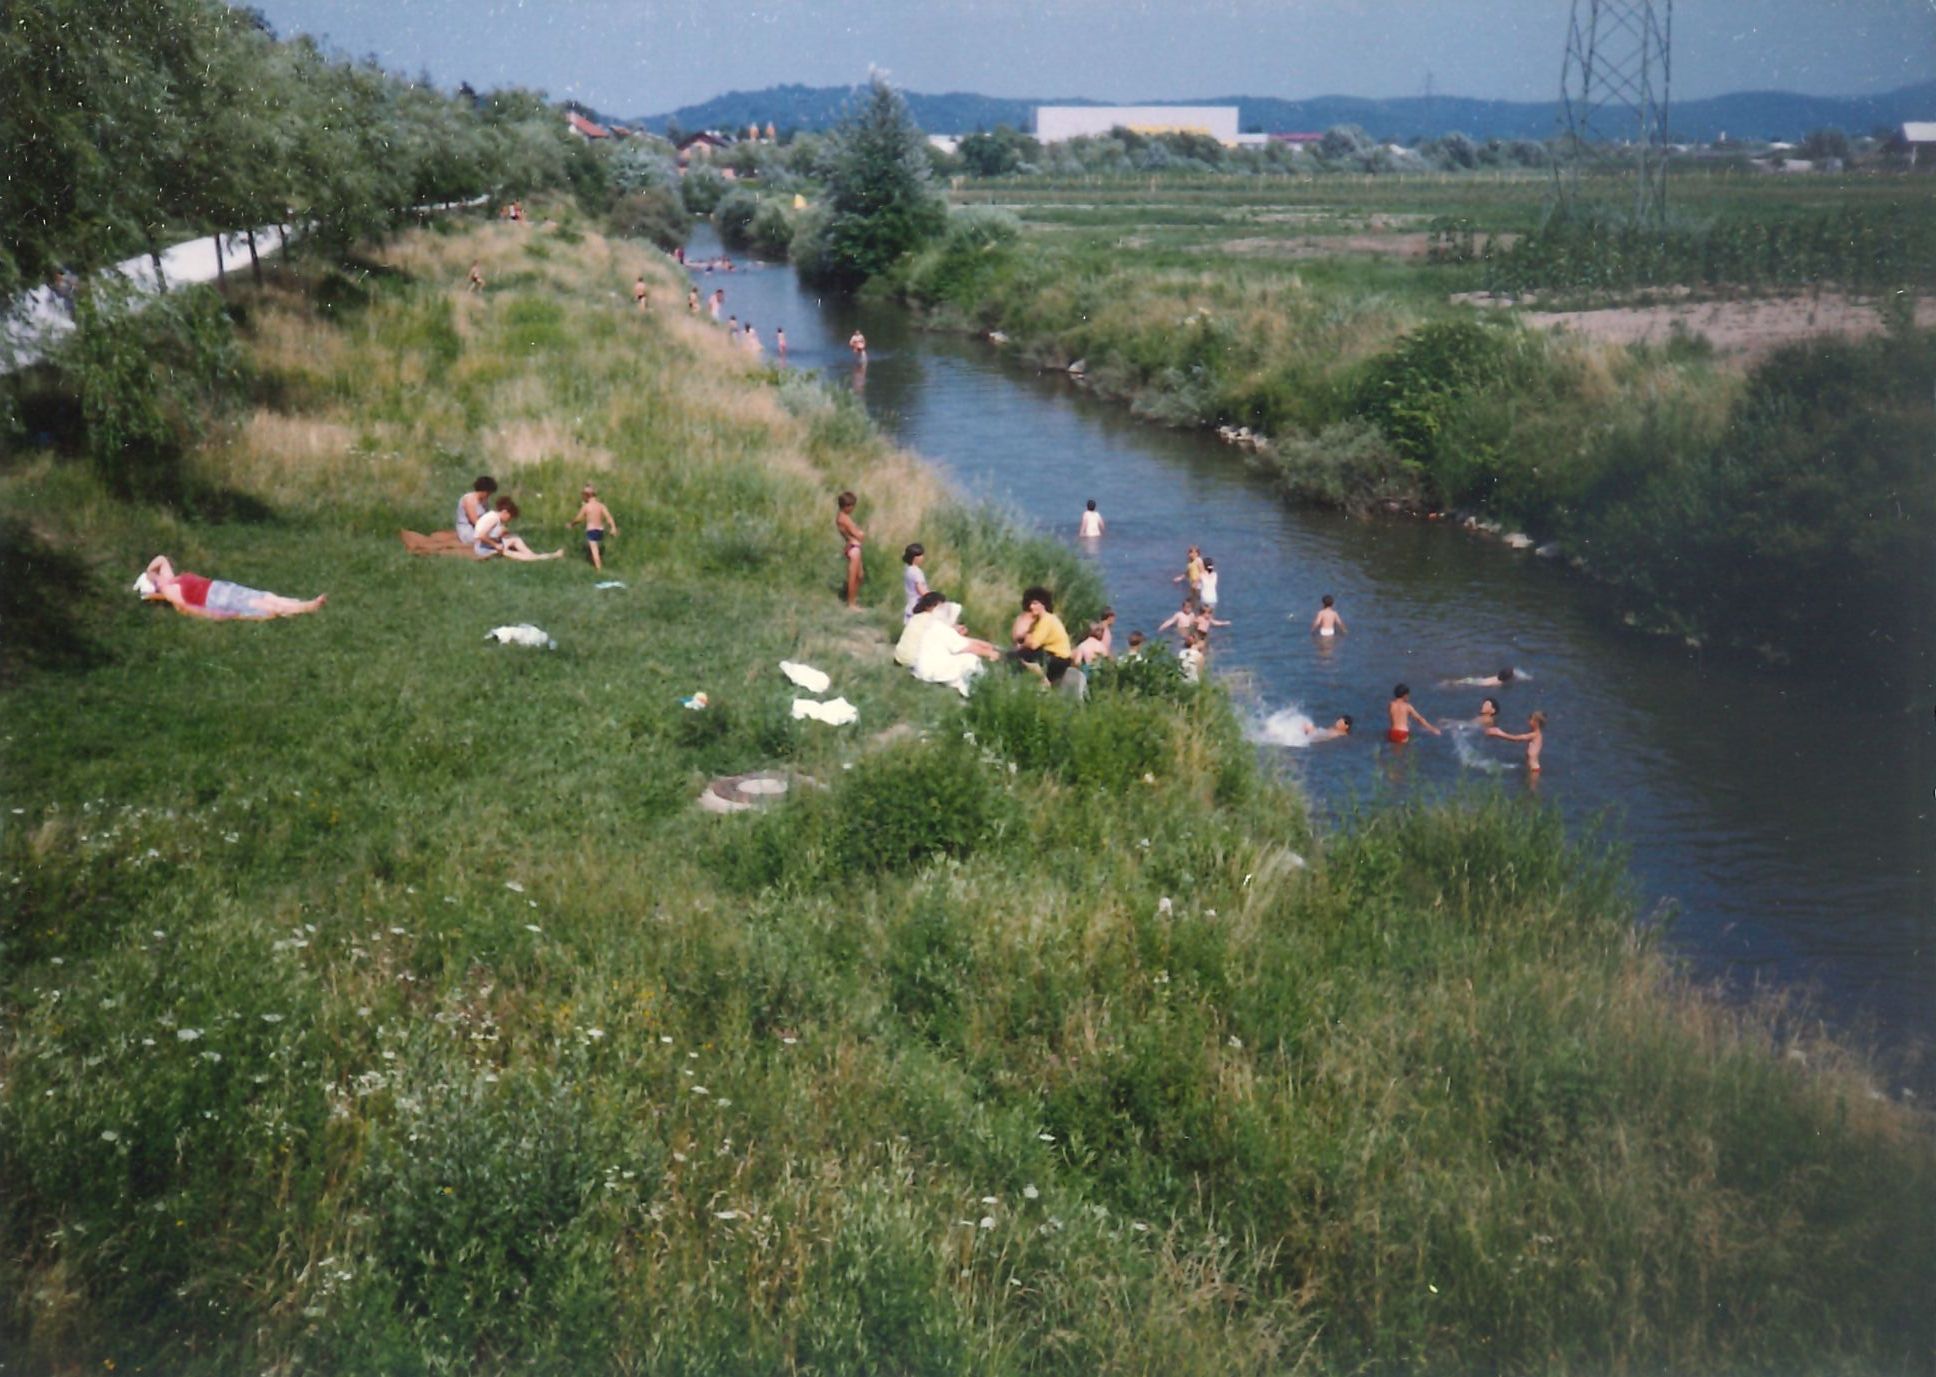 Slika 6: Bosanski begunci med kopanjem v Malem grabnu v
                                Ljubljani 4. julija 1992. Foto: 
                     